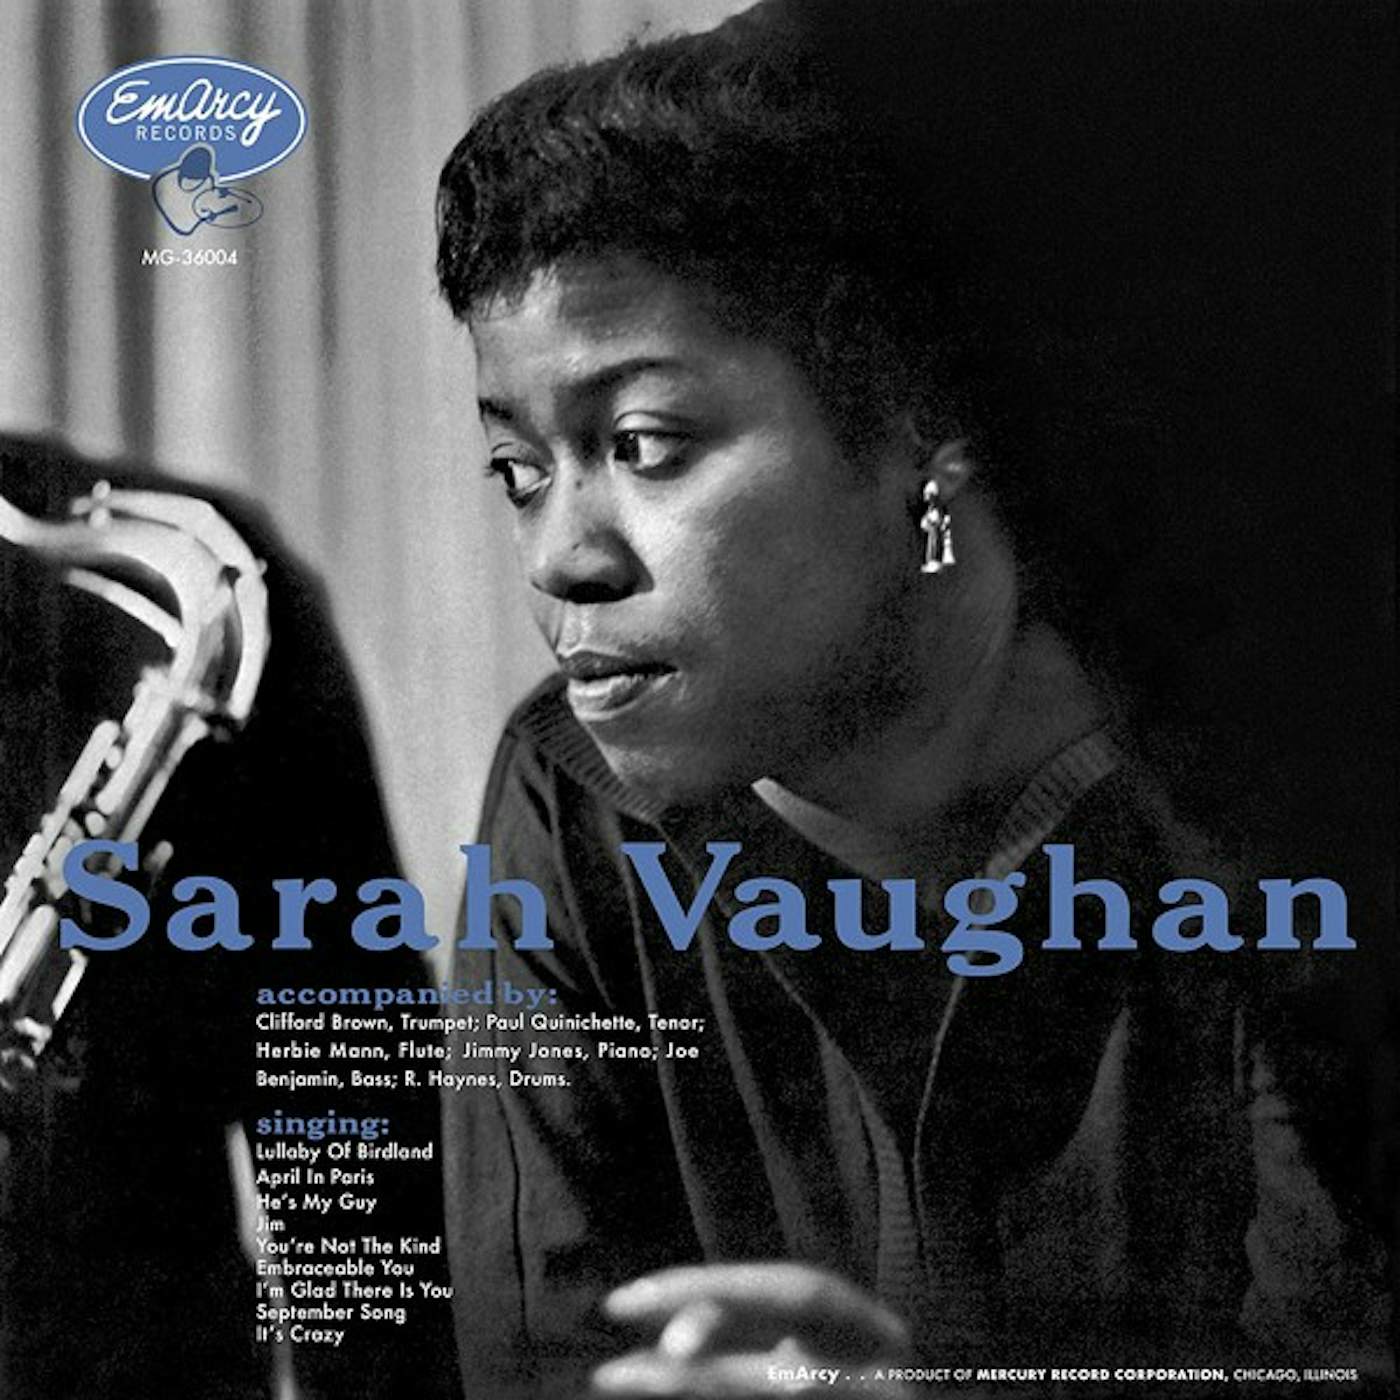 Sarah Vaughan (Verve Acoustic Sounds Series) Vinyl Record